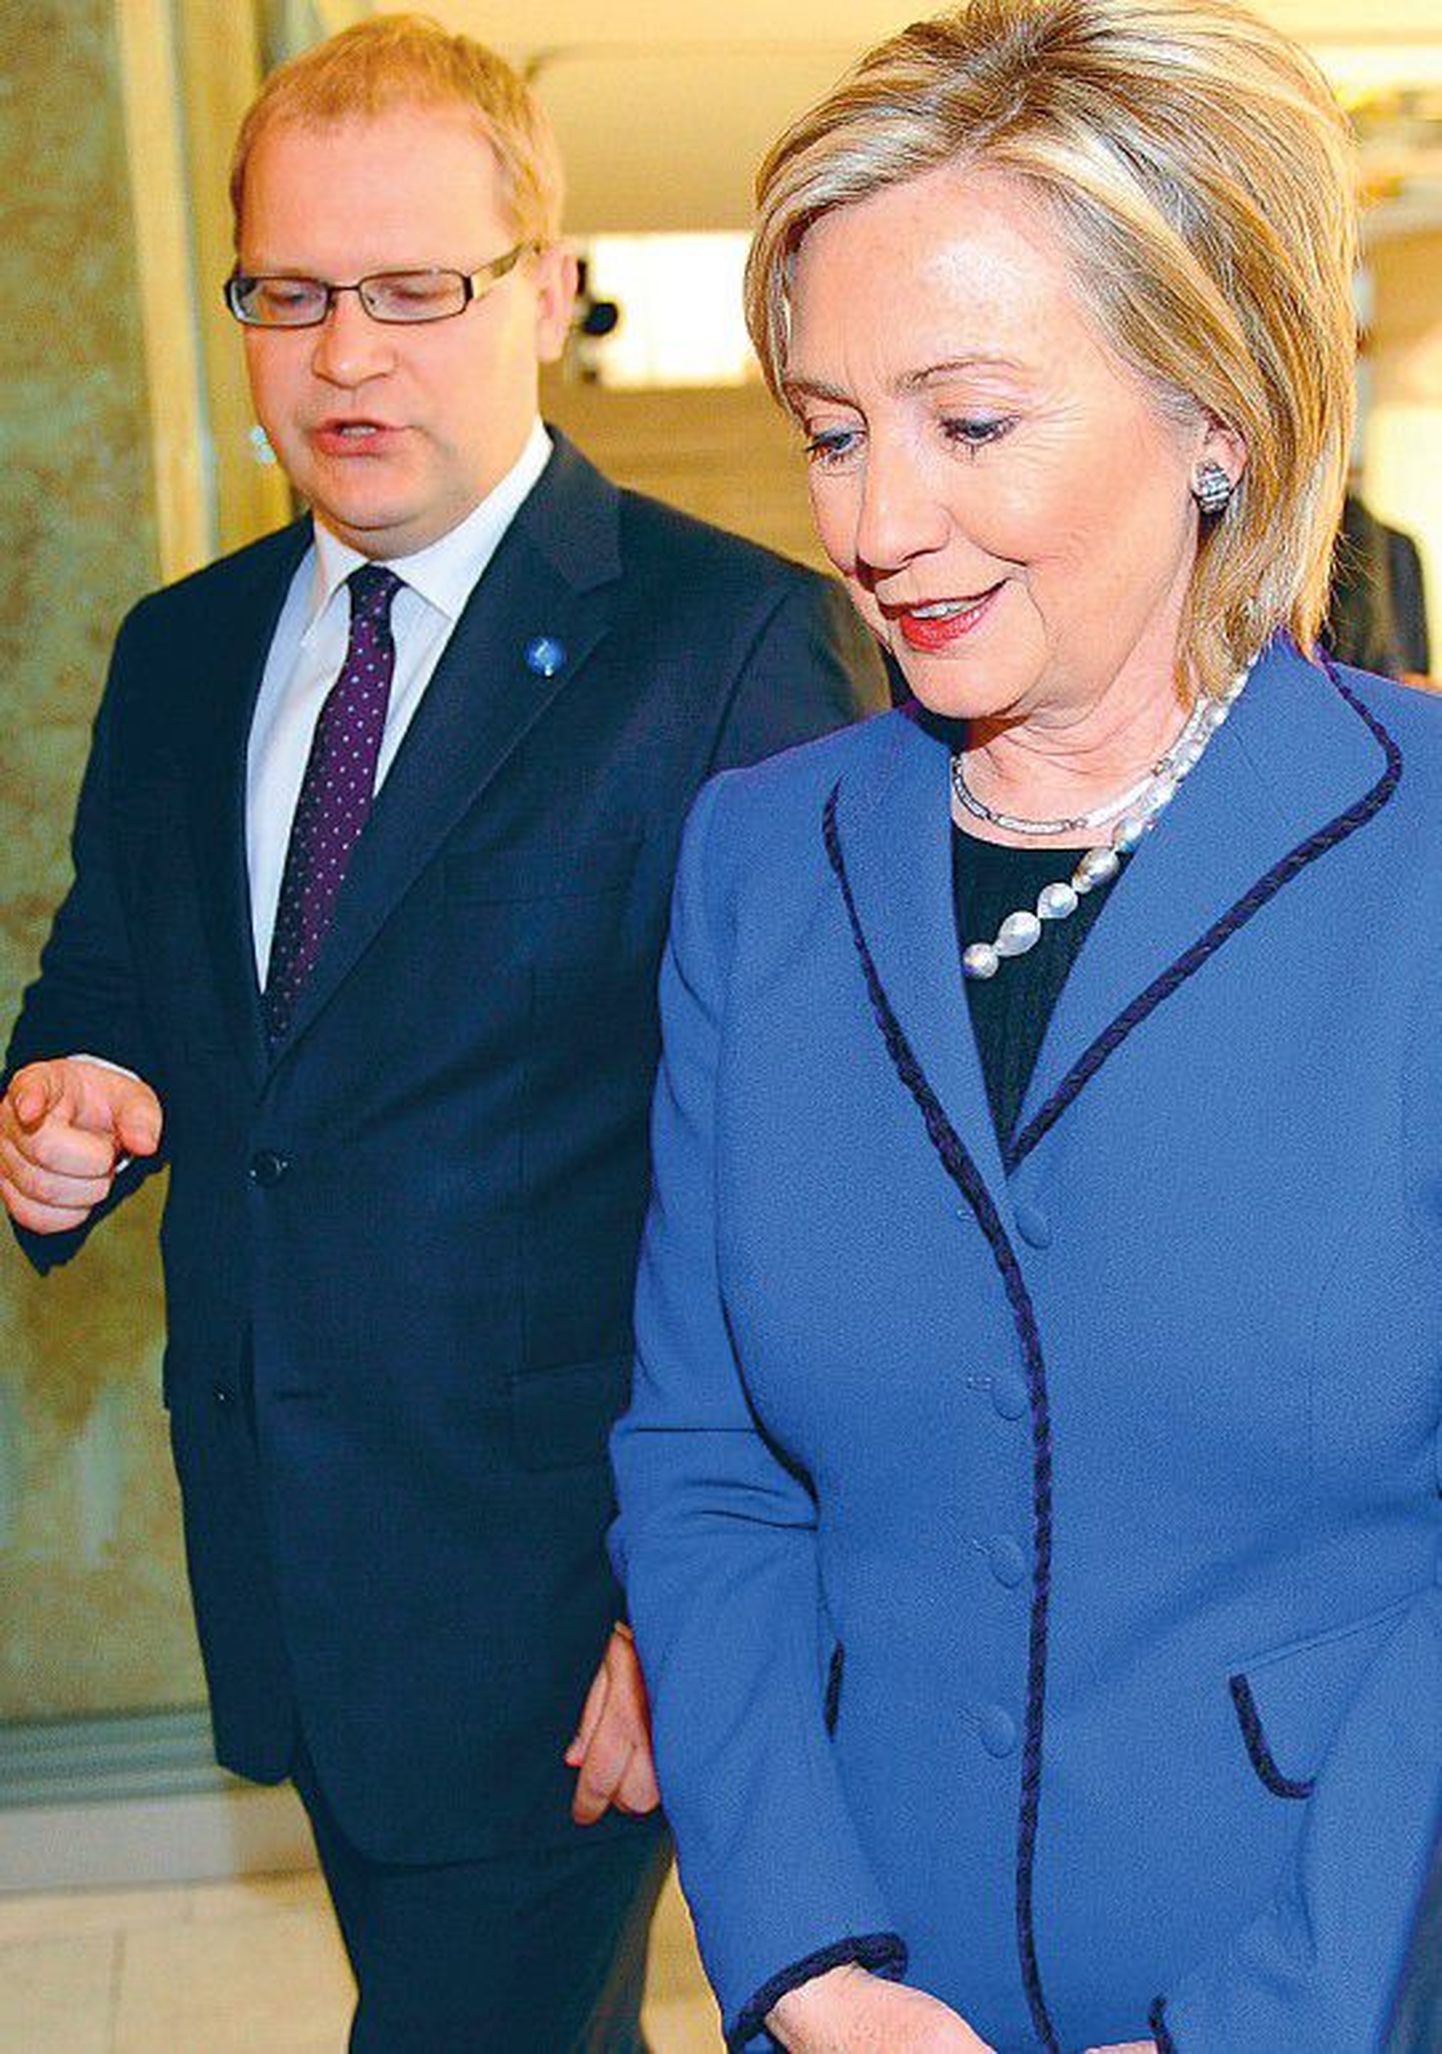 В сентябре 2009 года министр иностранных дел ЭР Урмас Паэт сообщил госсекретарю США Хиллари Клинтон, что Эстония работает над тем, чтобы удовлетворить просьбу Соединенных Штатов Америки относительно приема узников Гуантанамо.